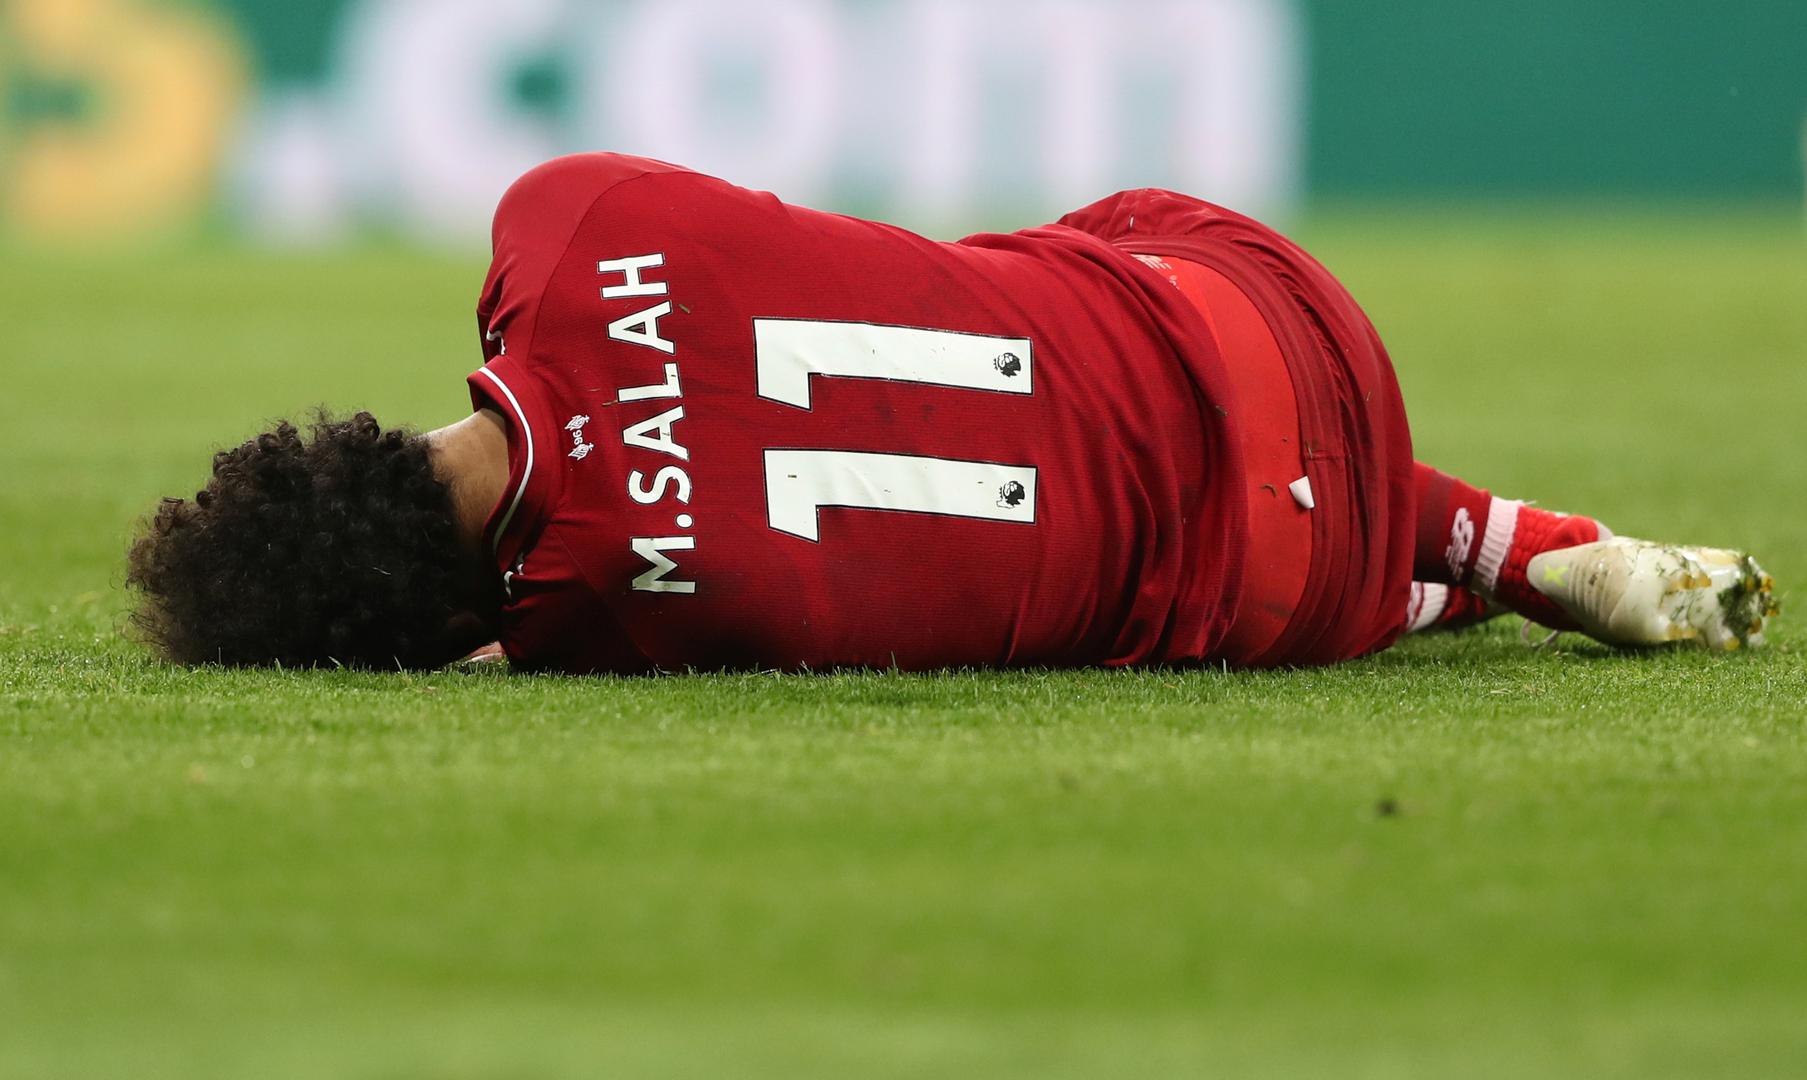 Jedan gol je zabio Mohamed Salah, ali su ga nakon toga iznijeli na nosilima nakon što se sudario s vratarom Dubravkom